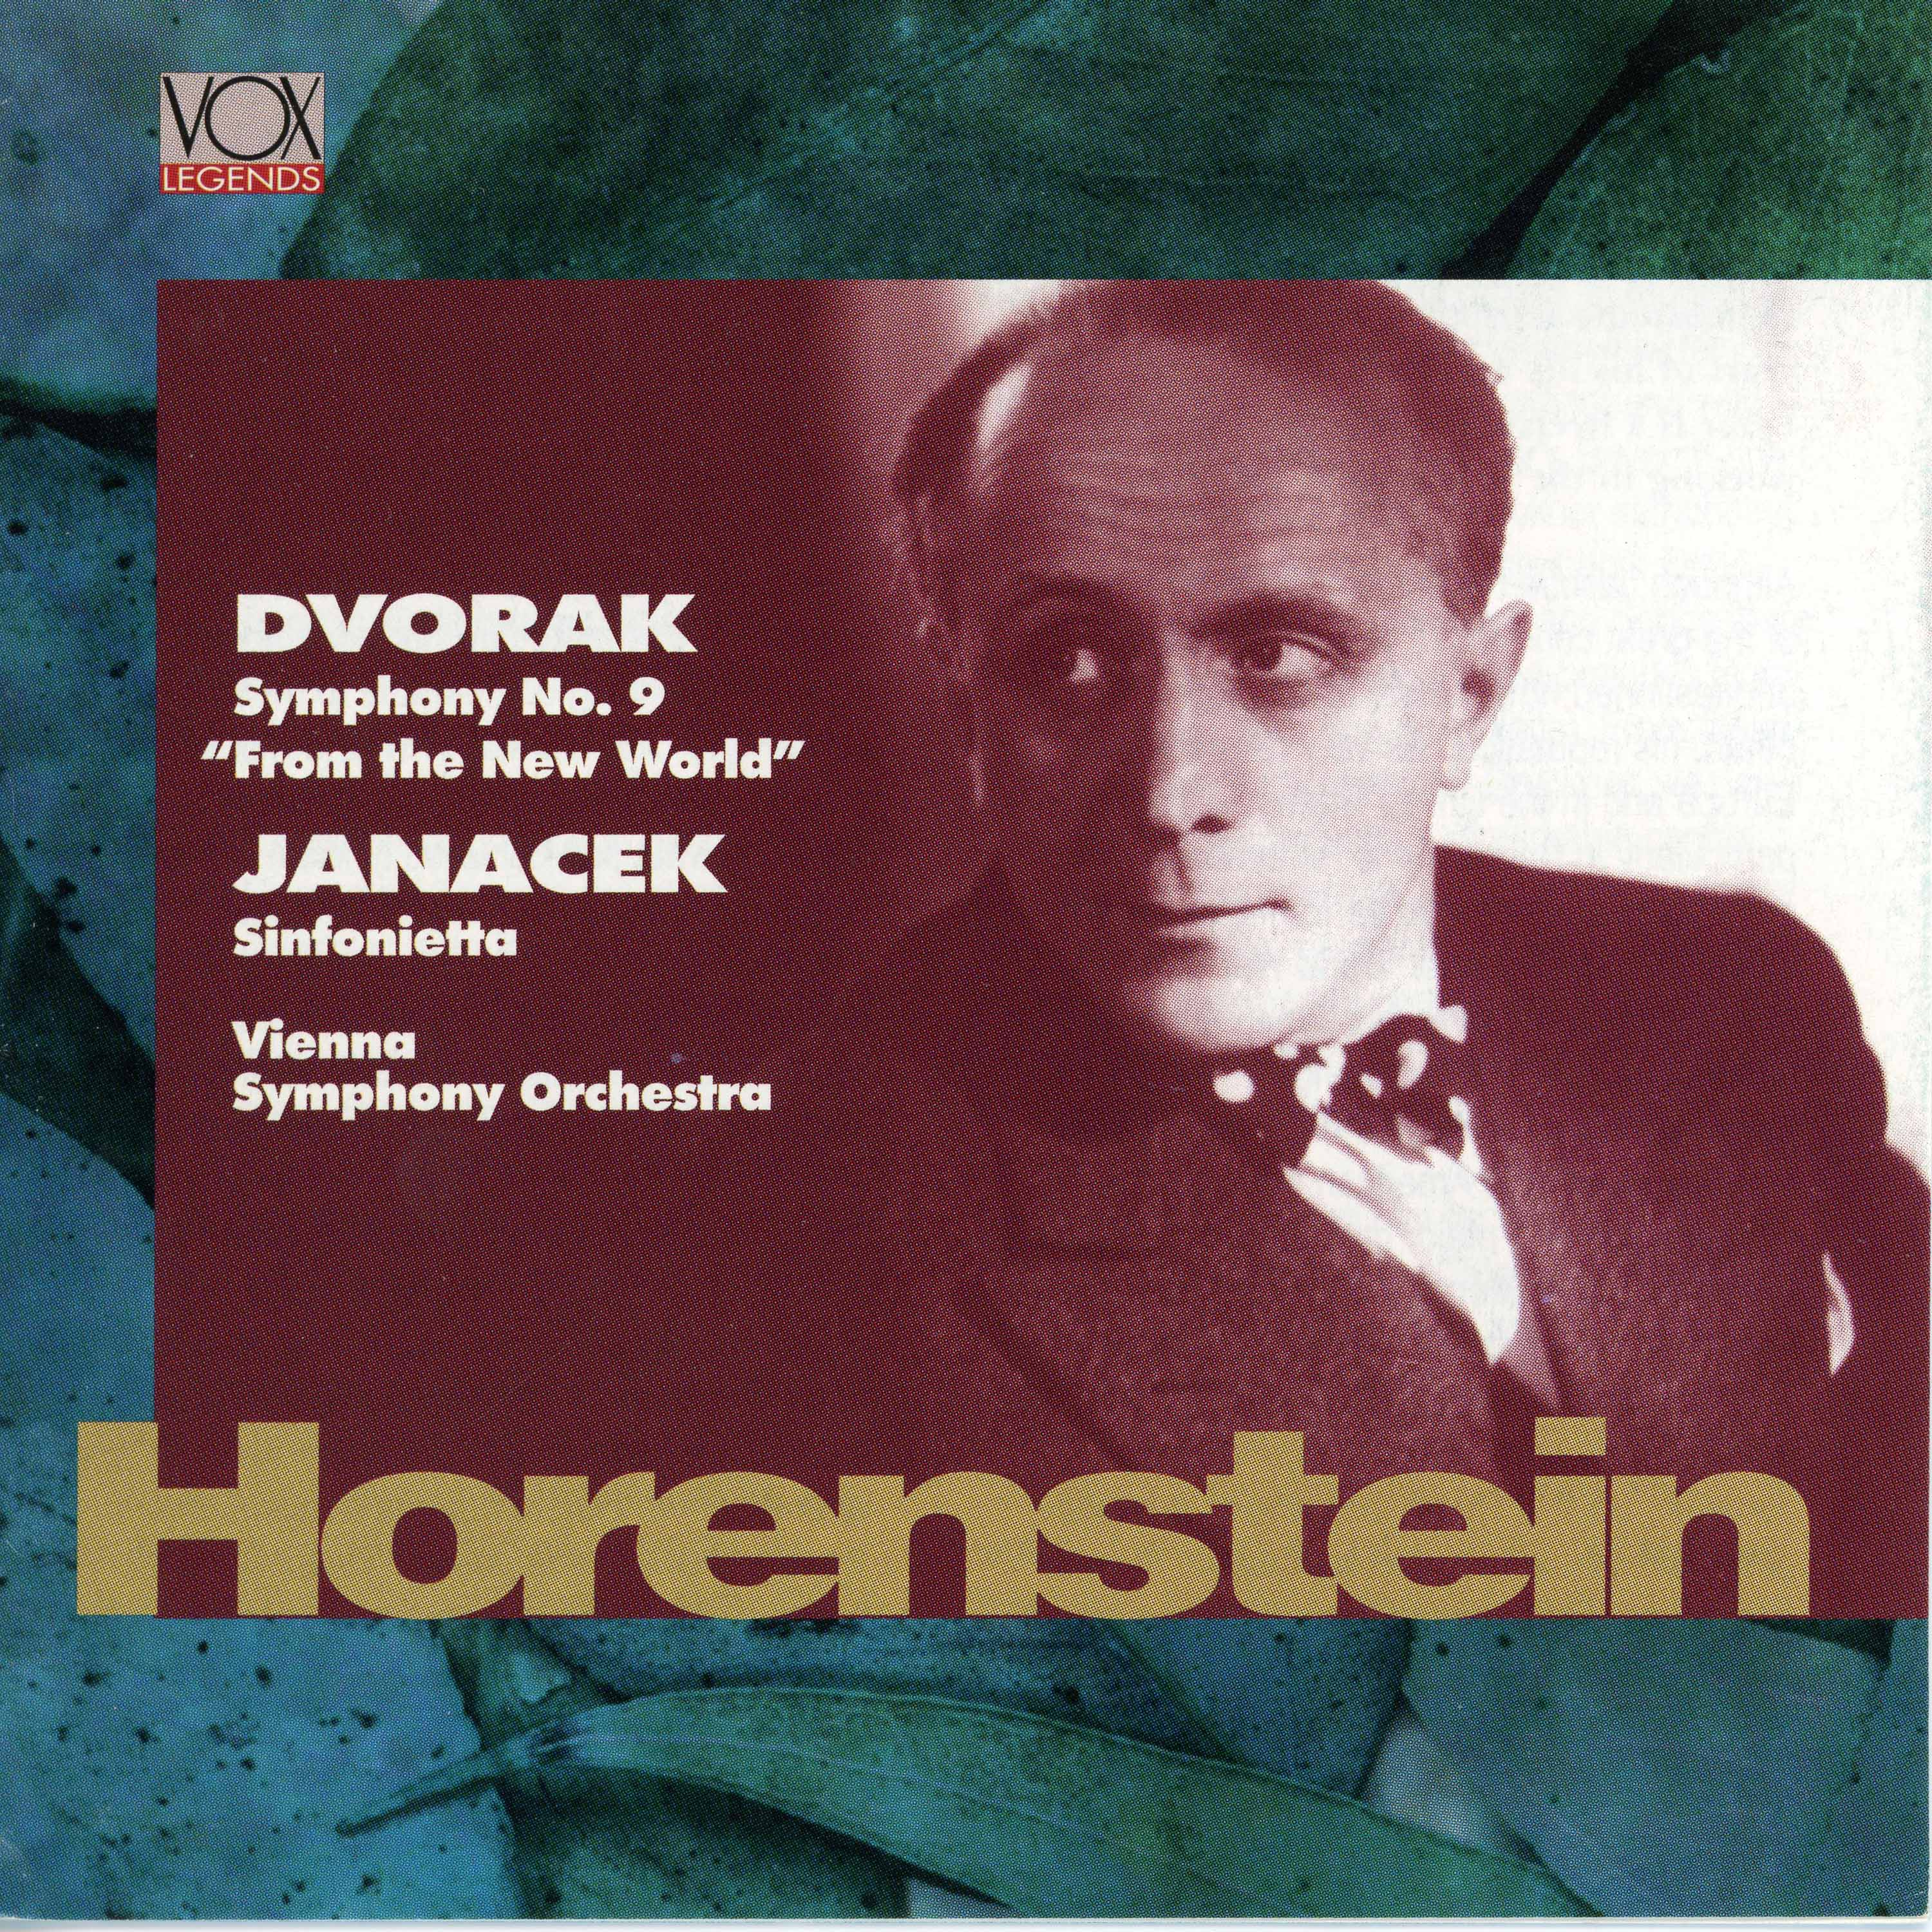 Dvořák: Symphony No. 9 "From the New World" - Janácek: Sinfonietta